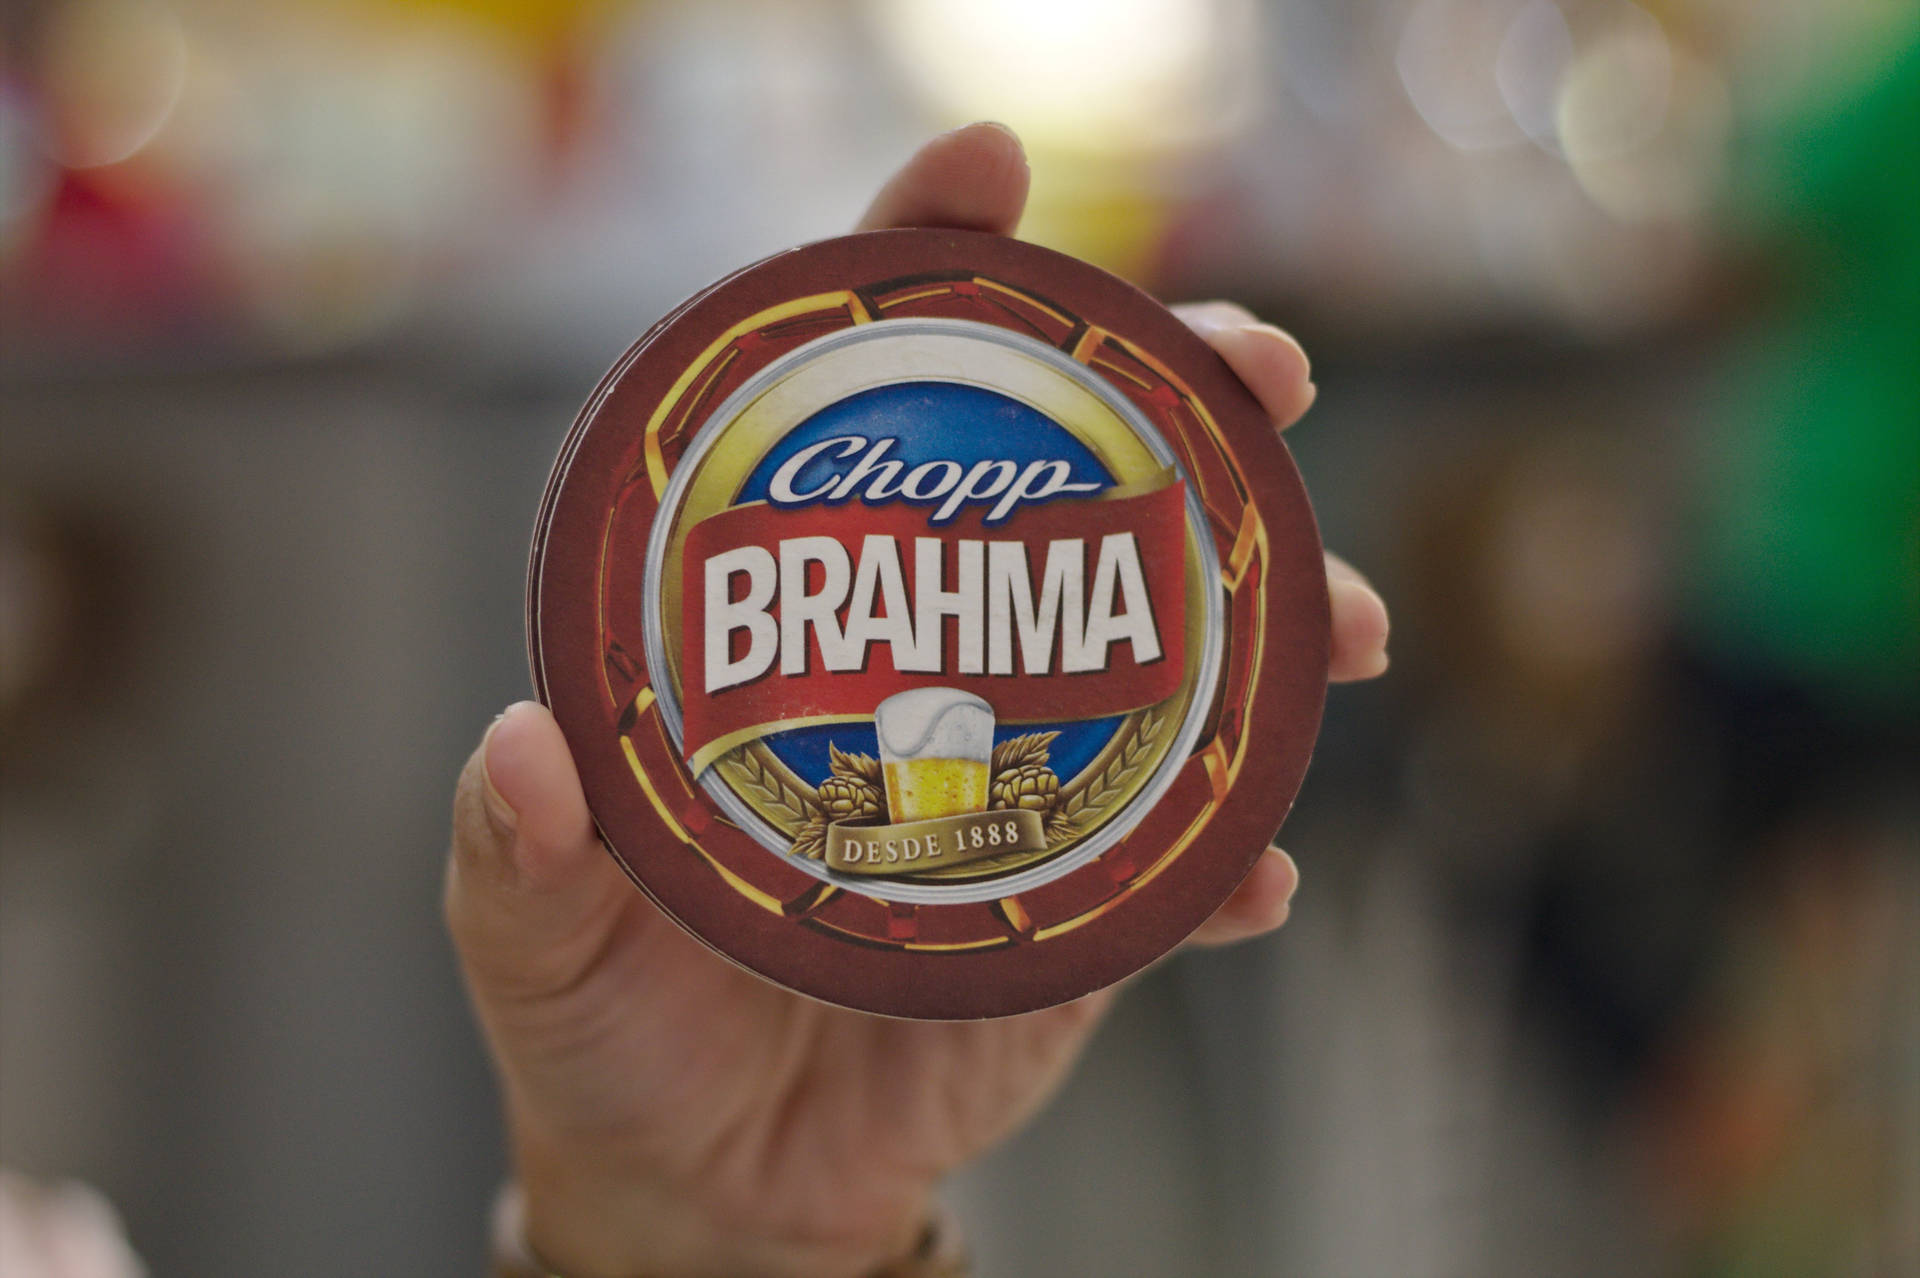 Brazilian Brahma Pilsen Chopp Beer Logo Wallpaper